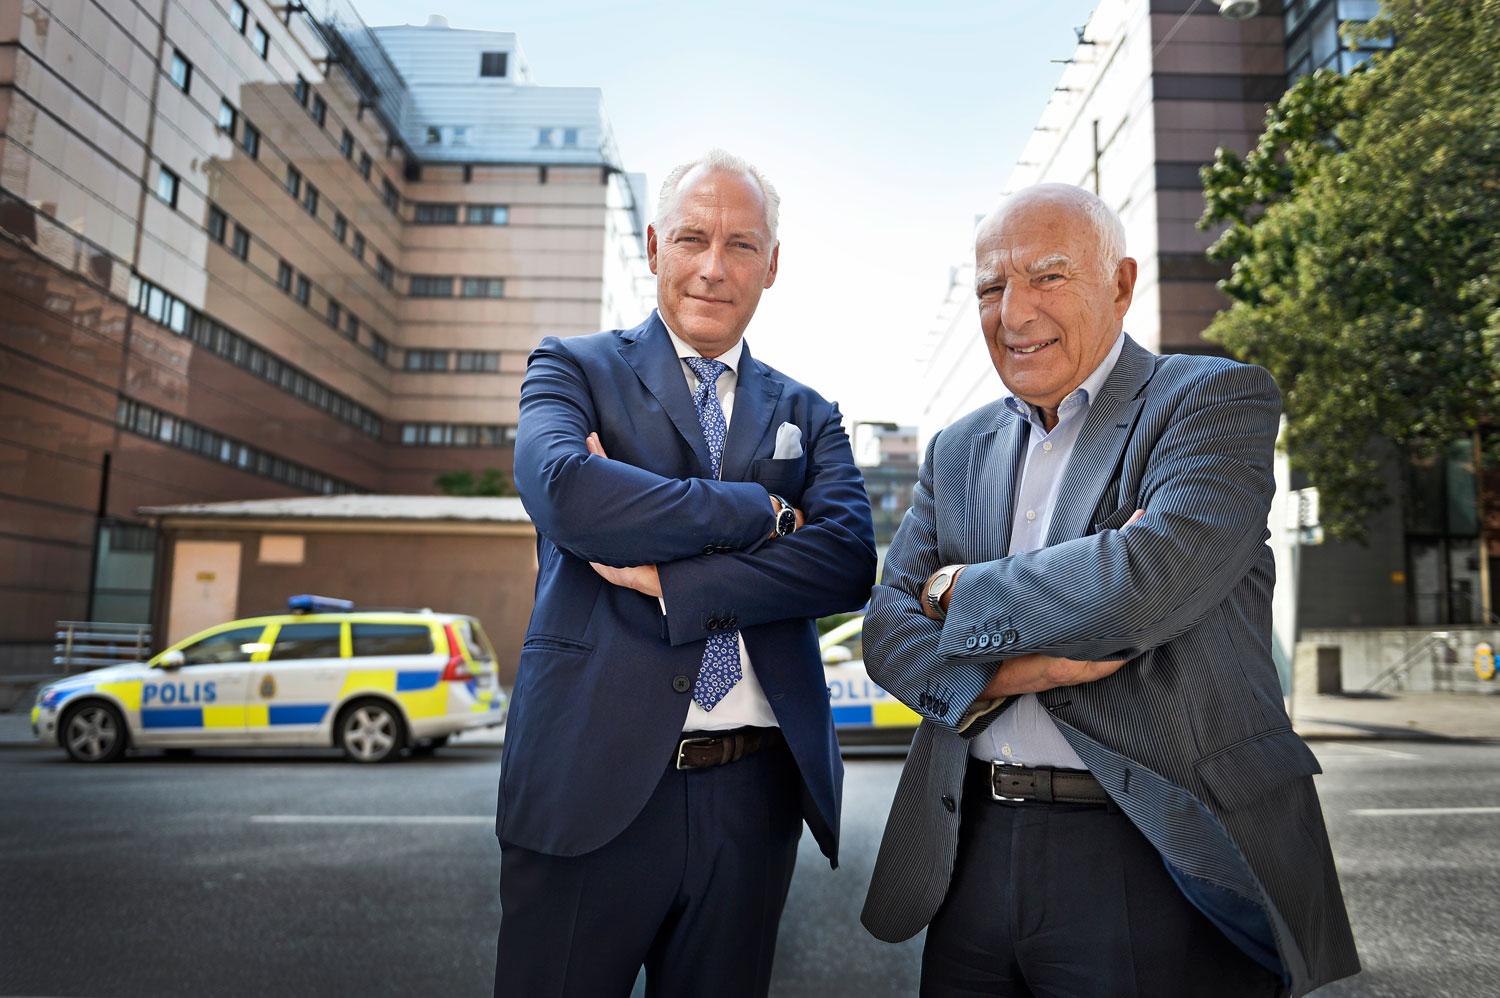 Brottscentralens experter, Johan Eriksson och Leif Silbersky, ska bland annat berätta hur det är ”på riktigt” i rättsalarna i Sverige.